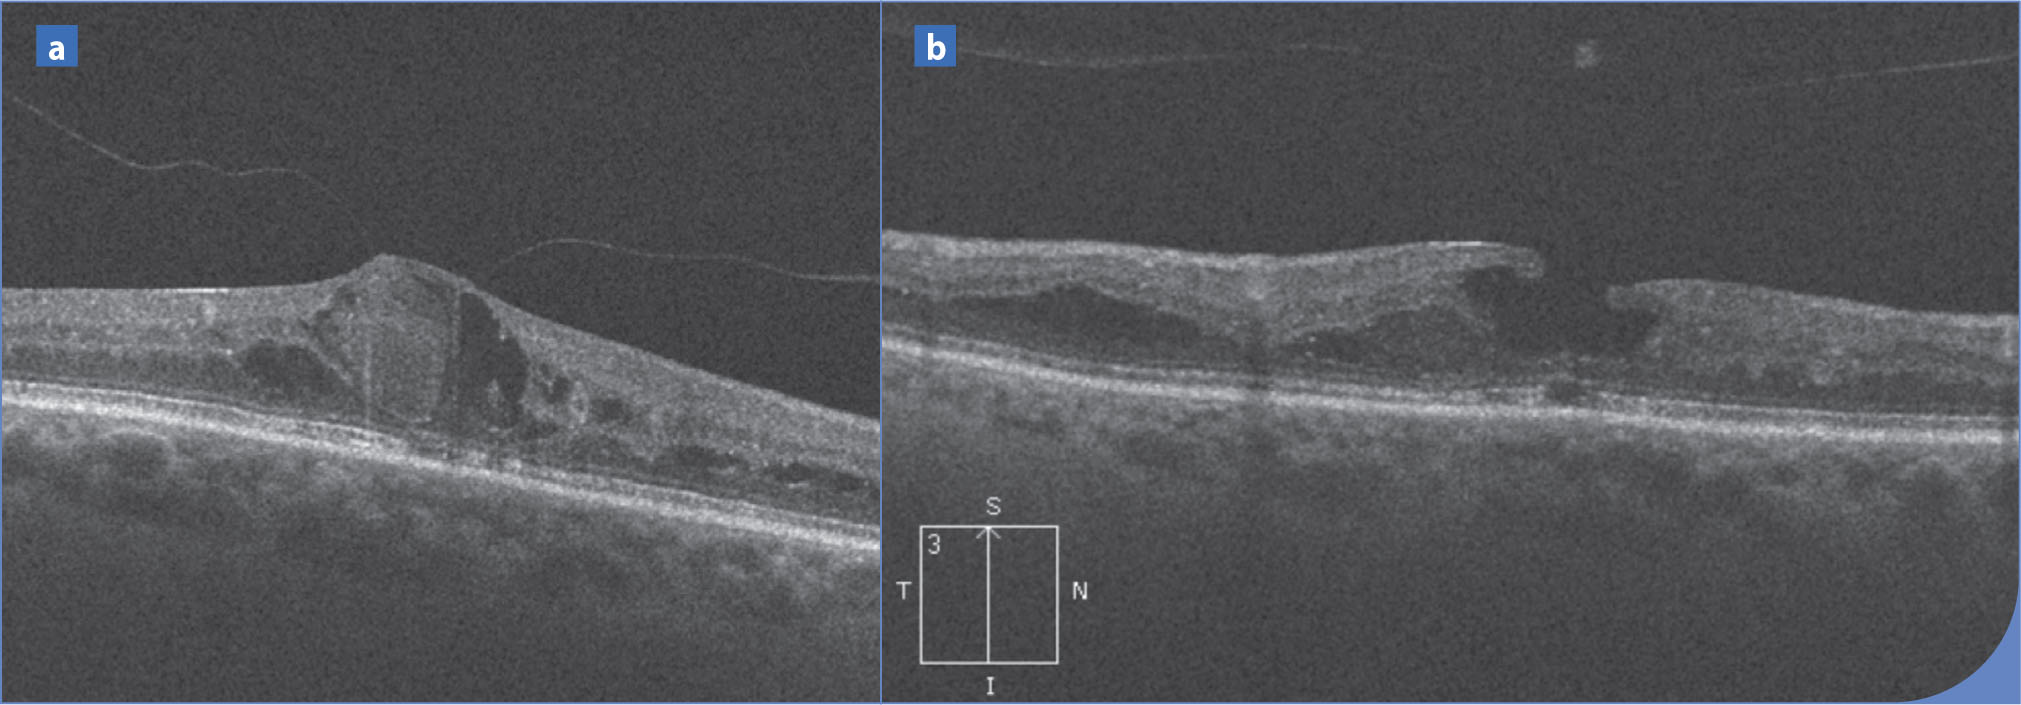 Bilan d'imagerie d'un œdème maculaire diabétique en OCT et en angiographie à la fluorescéine - Figure 5